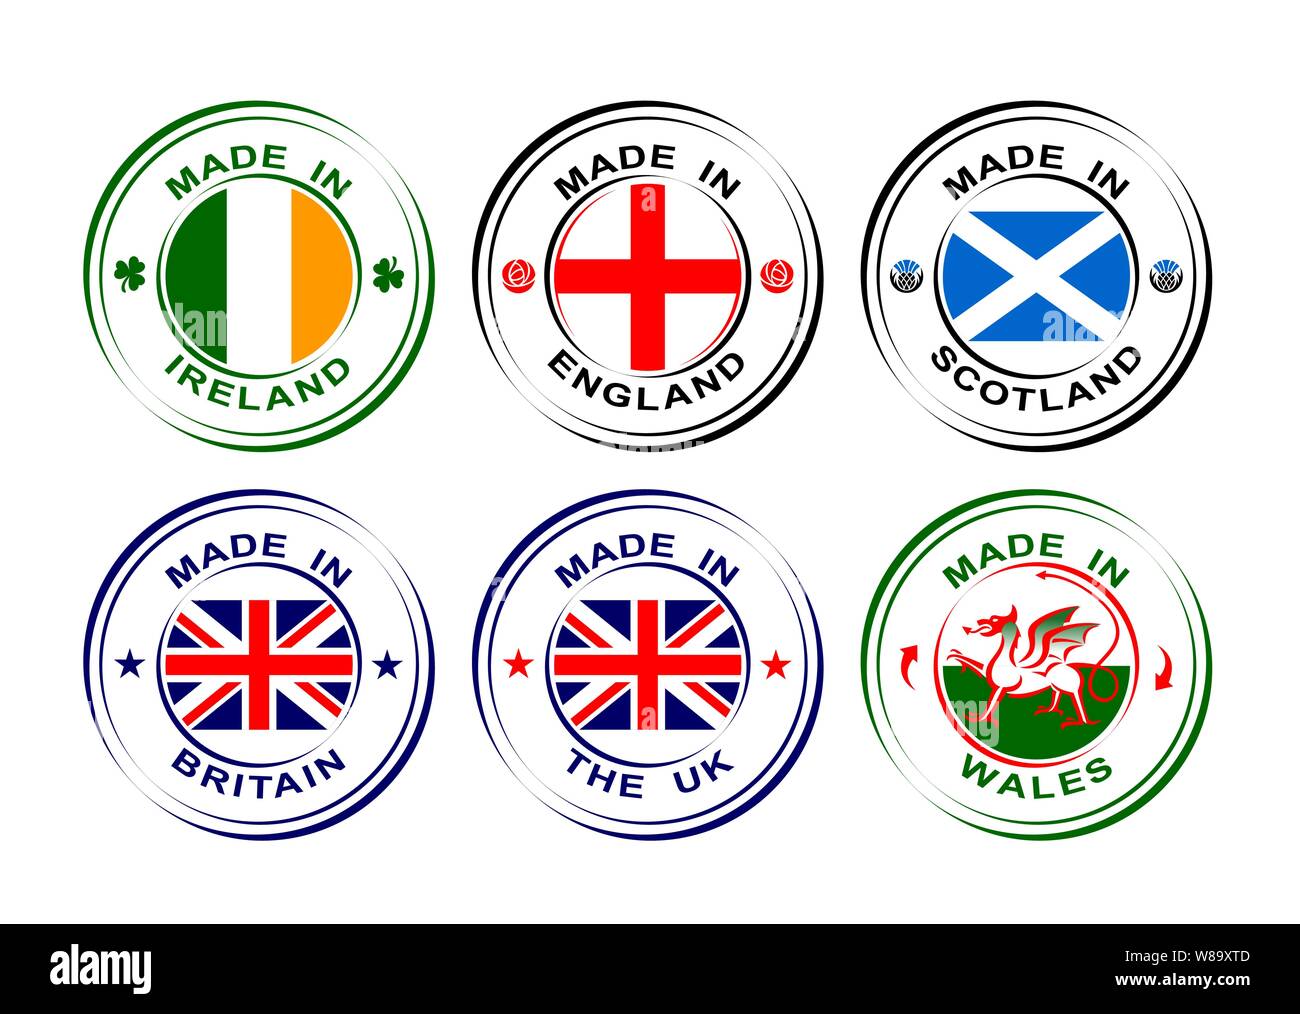 Realizzato nel Regno Unito e in Gran Bretagna con bandiera, il Galles con Dragon, in Scozia con il cardo, Inghilterra con rose, Irlanda con shamrock Illustrazione Vettoriale